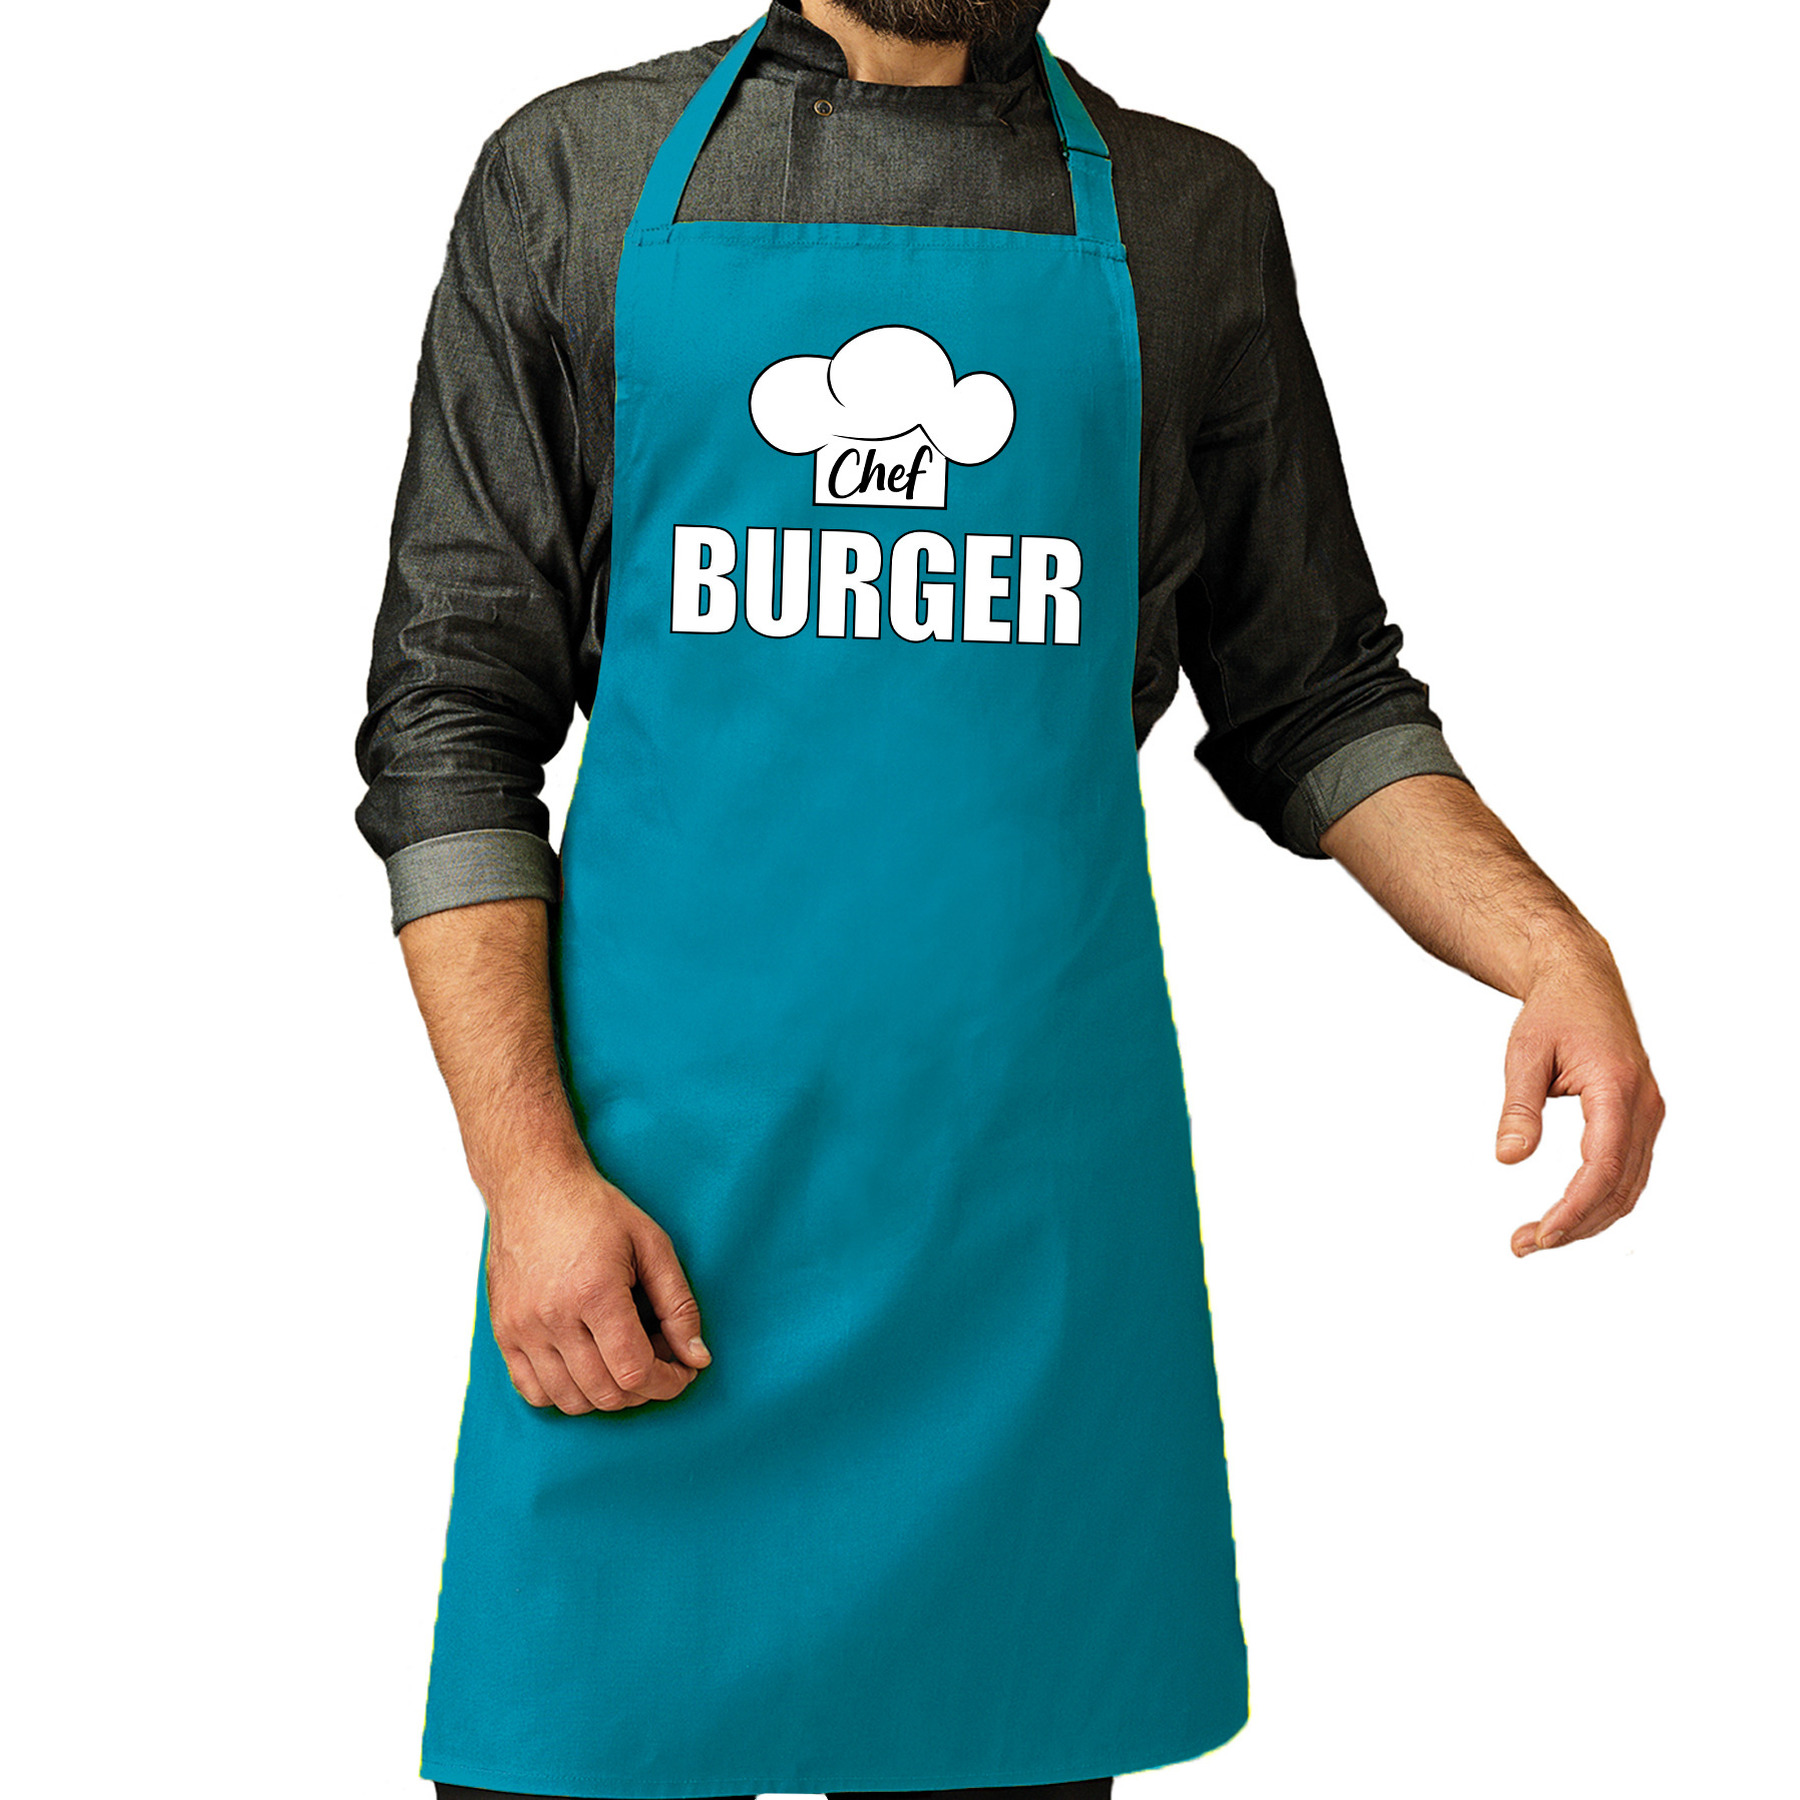 Chef burger schort - keukenschort turquoise heren